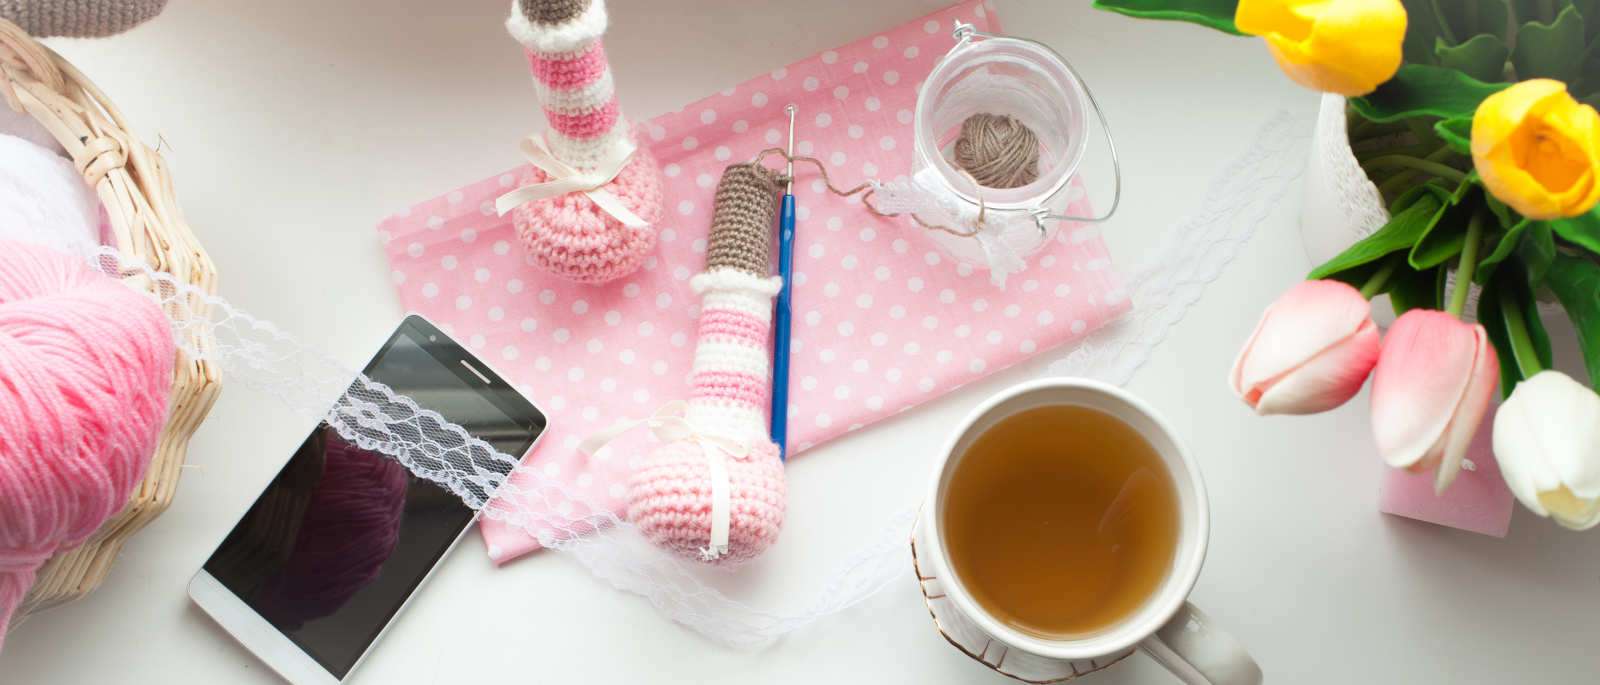 Tips amd Tricks for crochet amigurumi